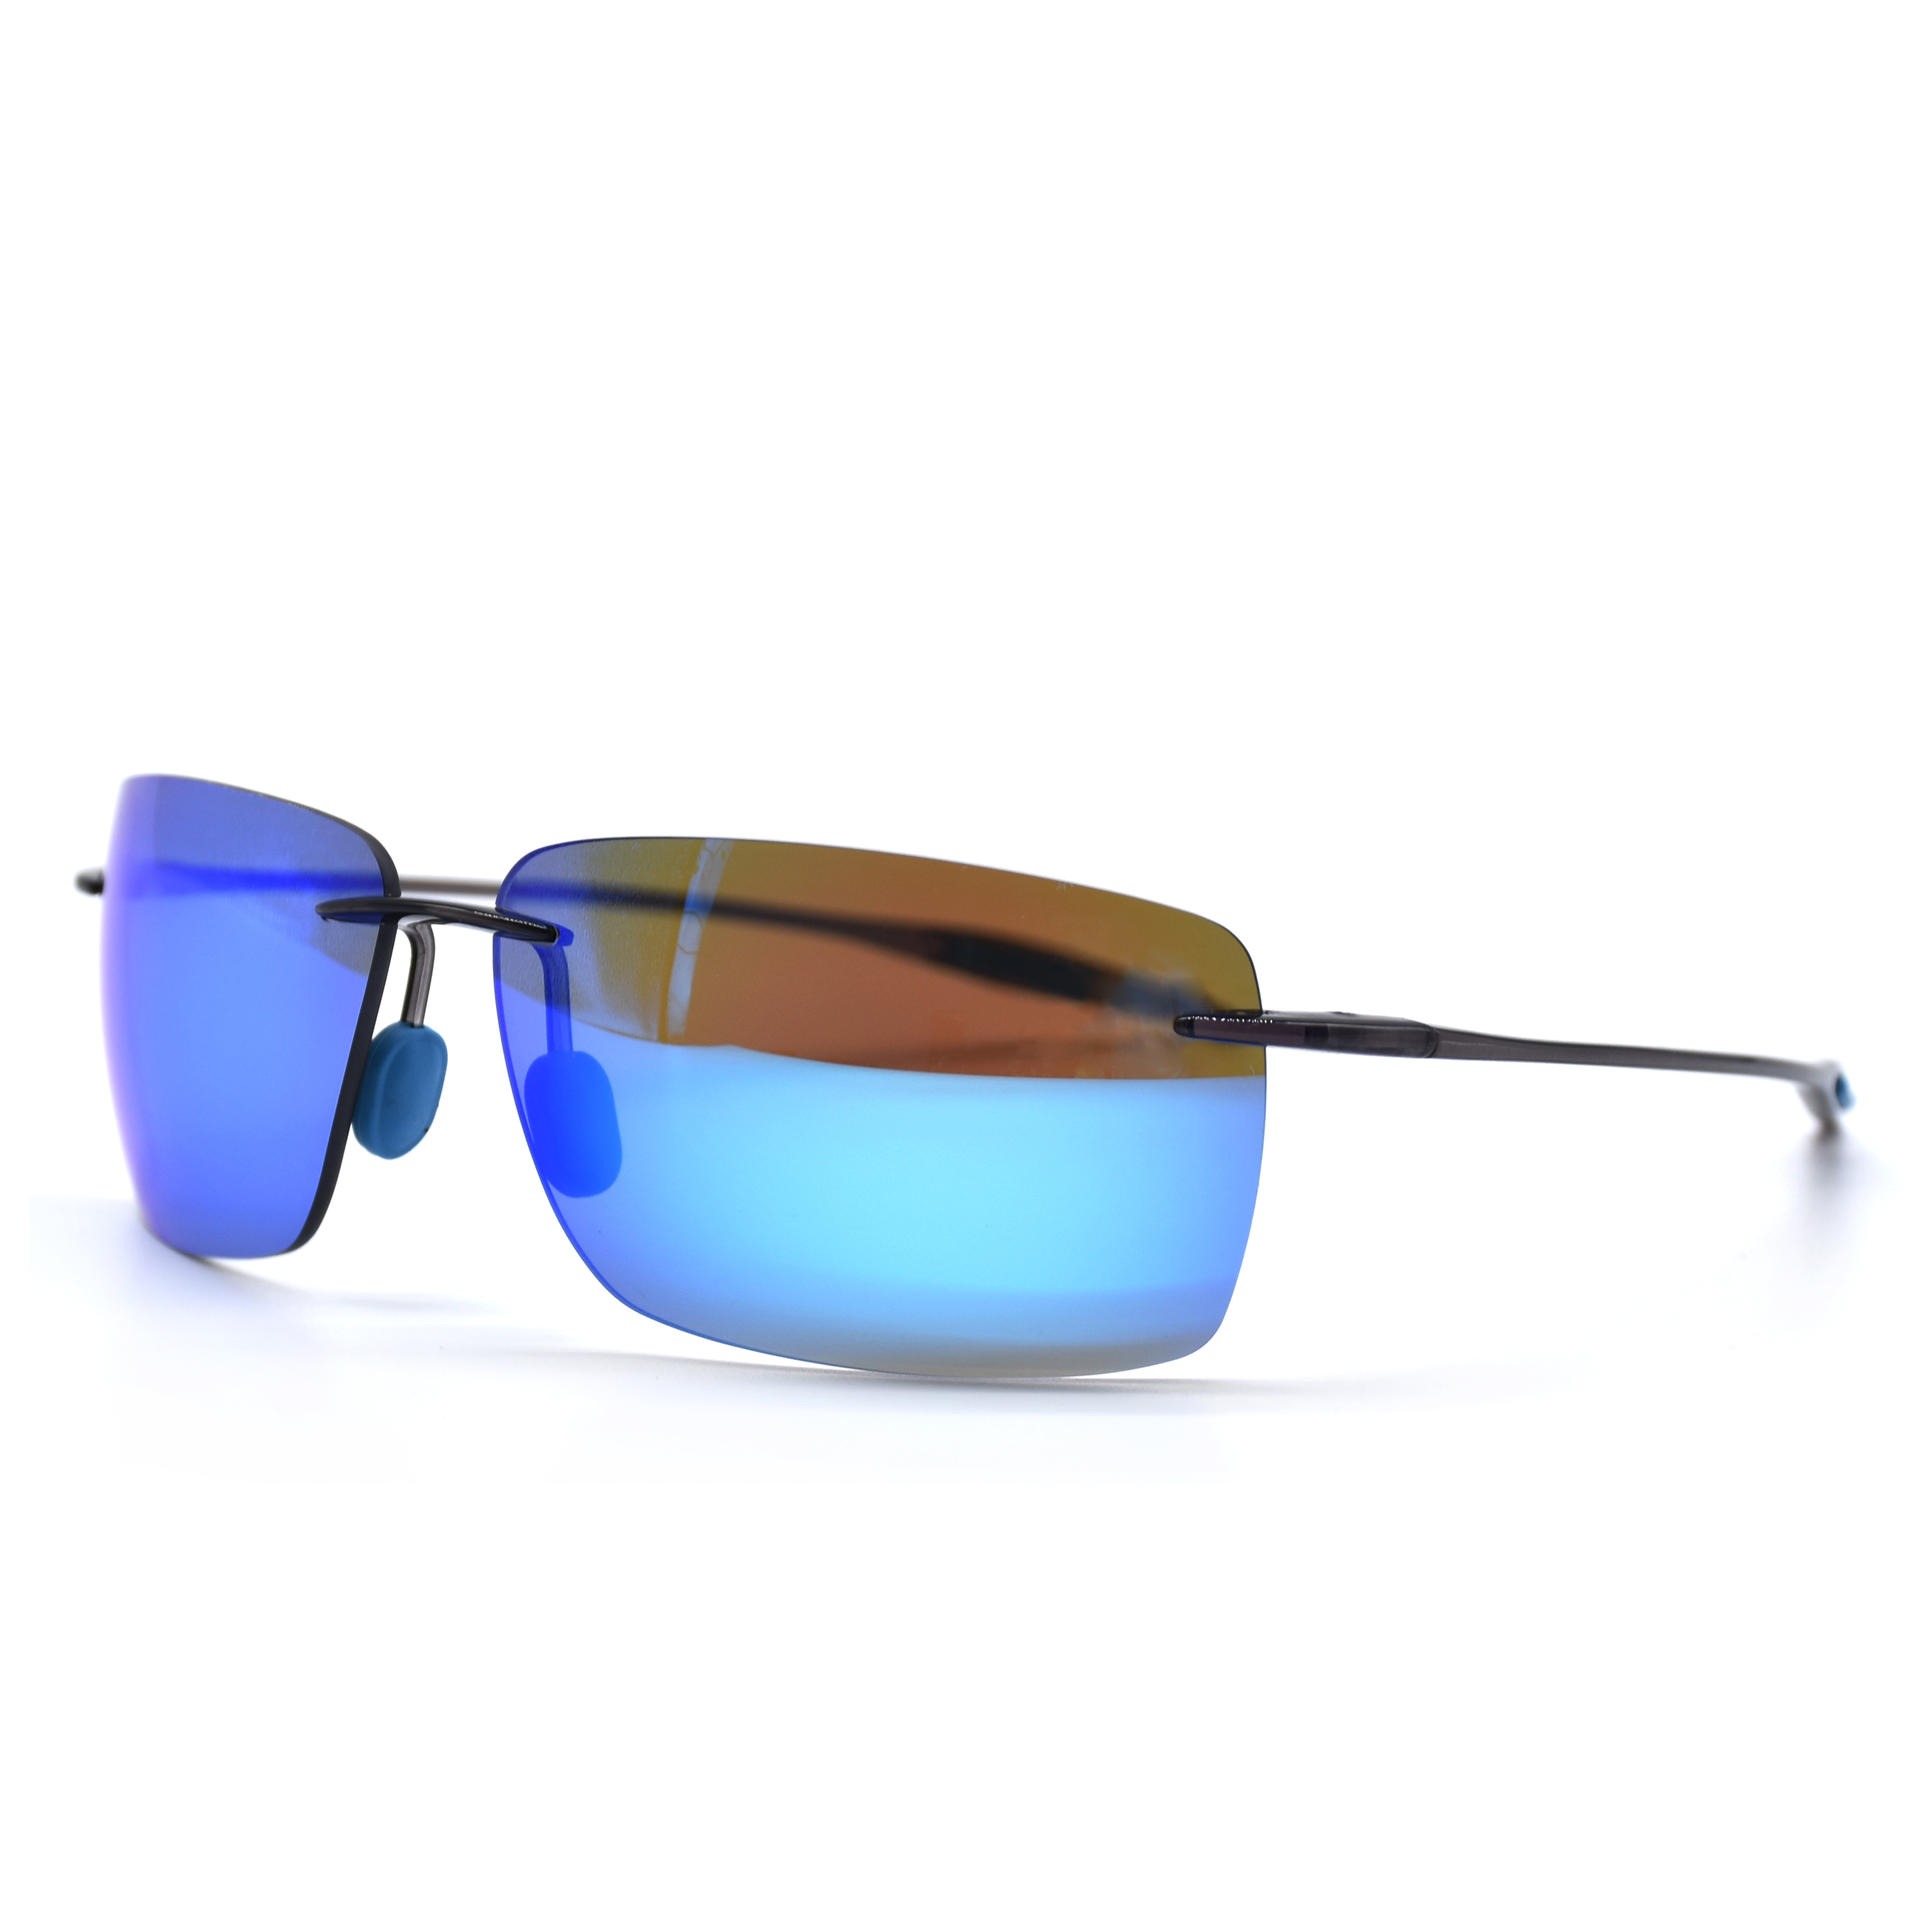 TR90超轻无框偏光太阳眼镜 休闲时尚太阳眼镜 骑行跑步防风眼镜8